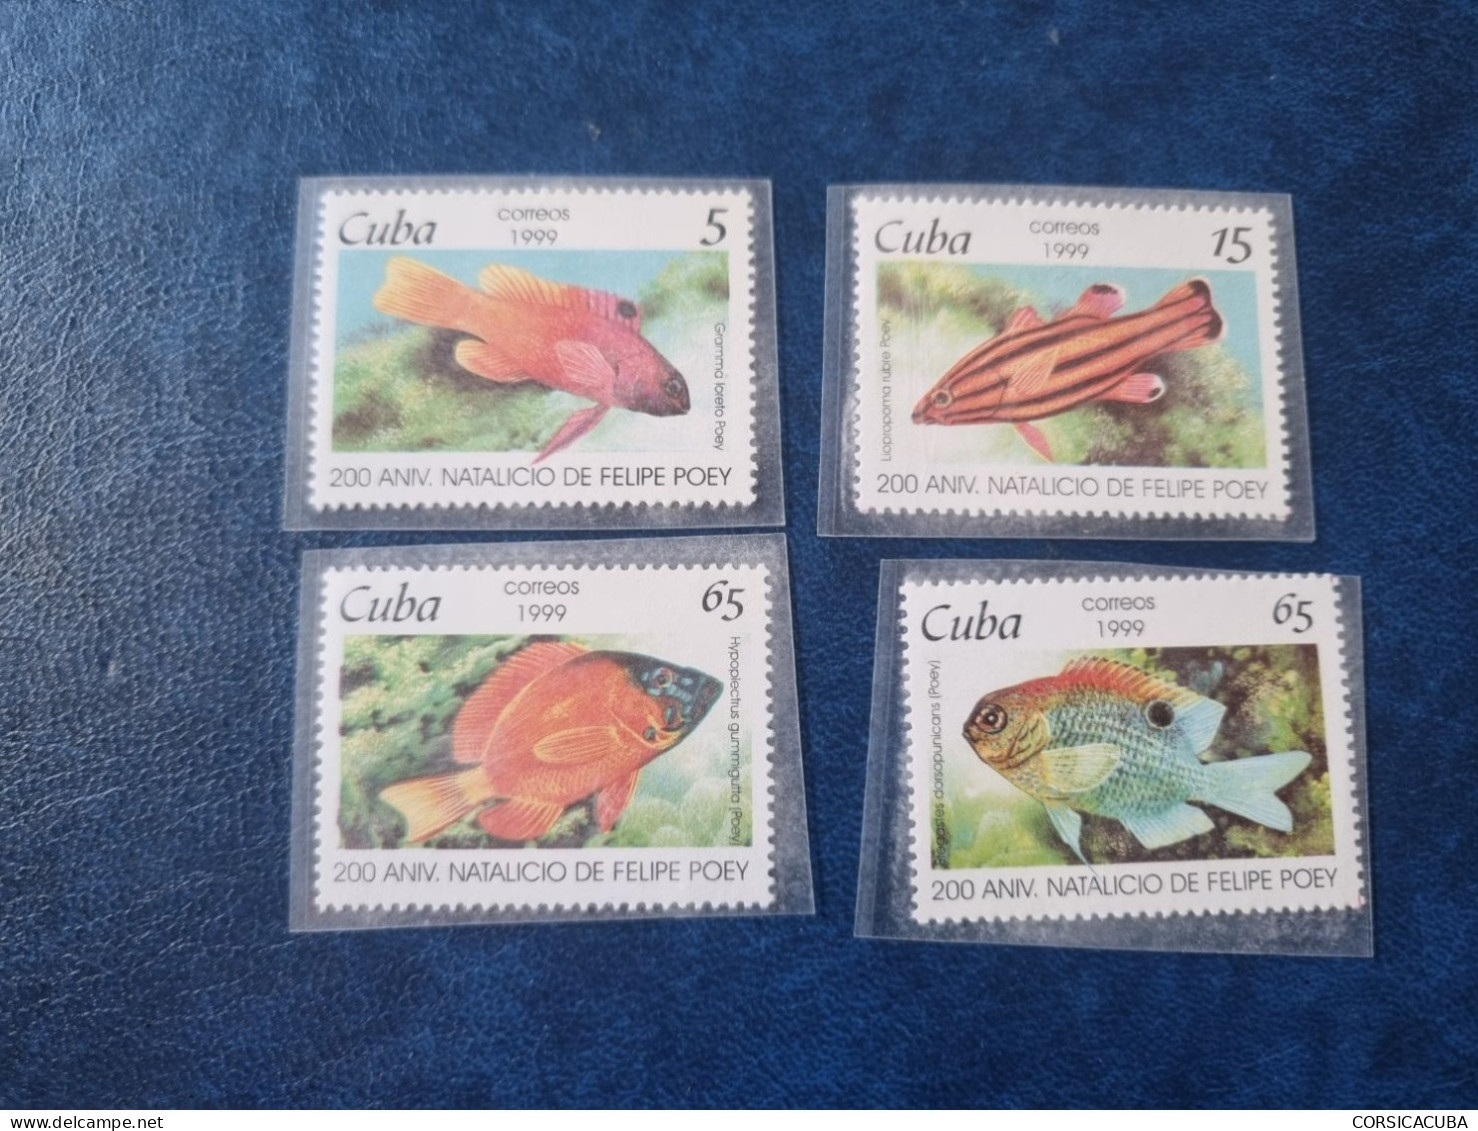 CUBA  NEUF  1999     NATALICIO  DE  FELIPE  POEY   //  PARFAIT  ETAT  //  1er  CHOIX  // - Unused Stamps